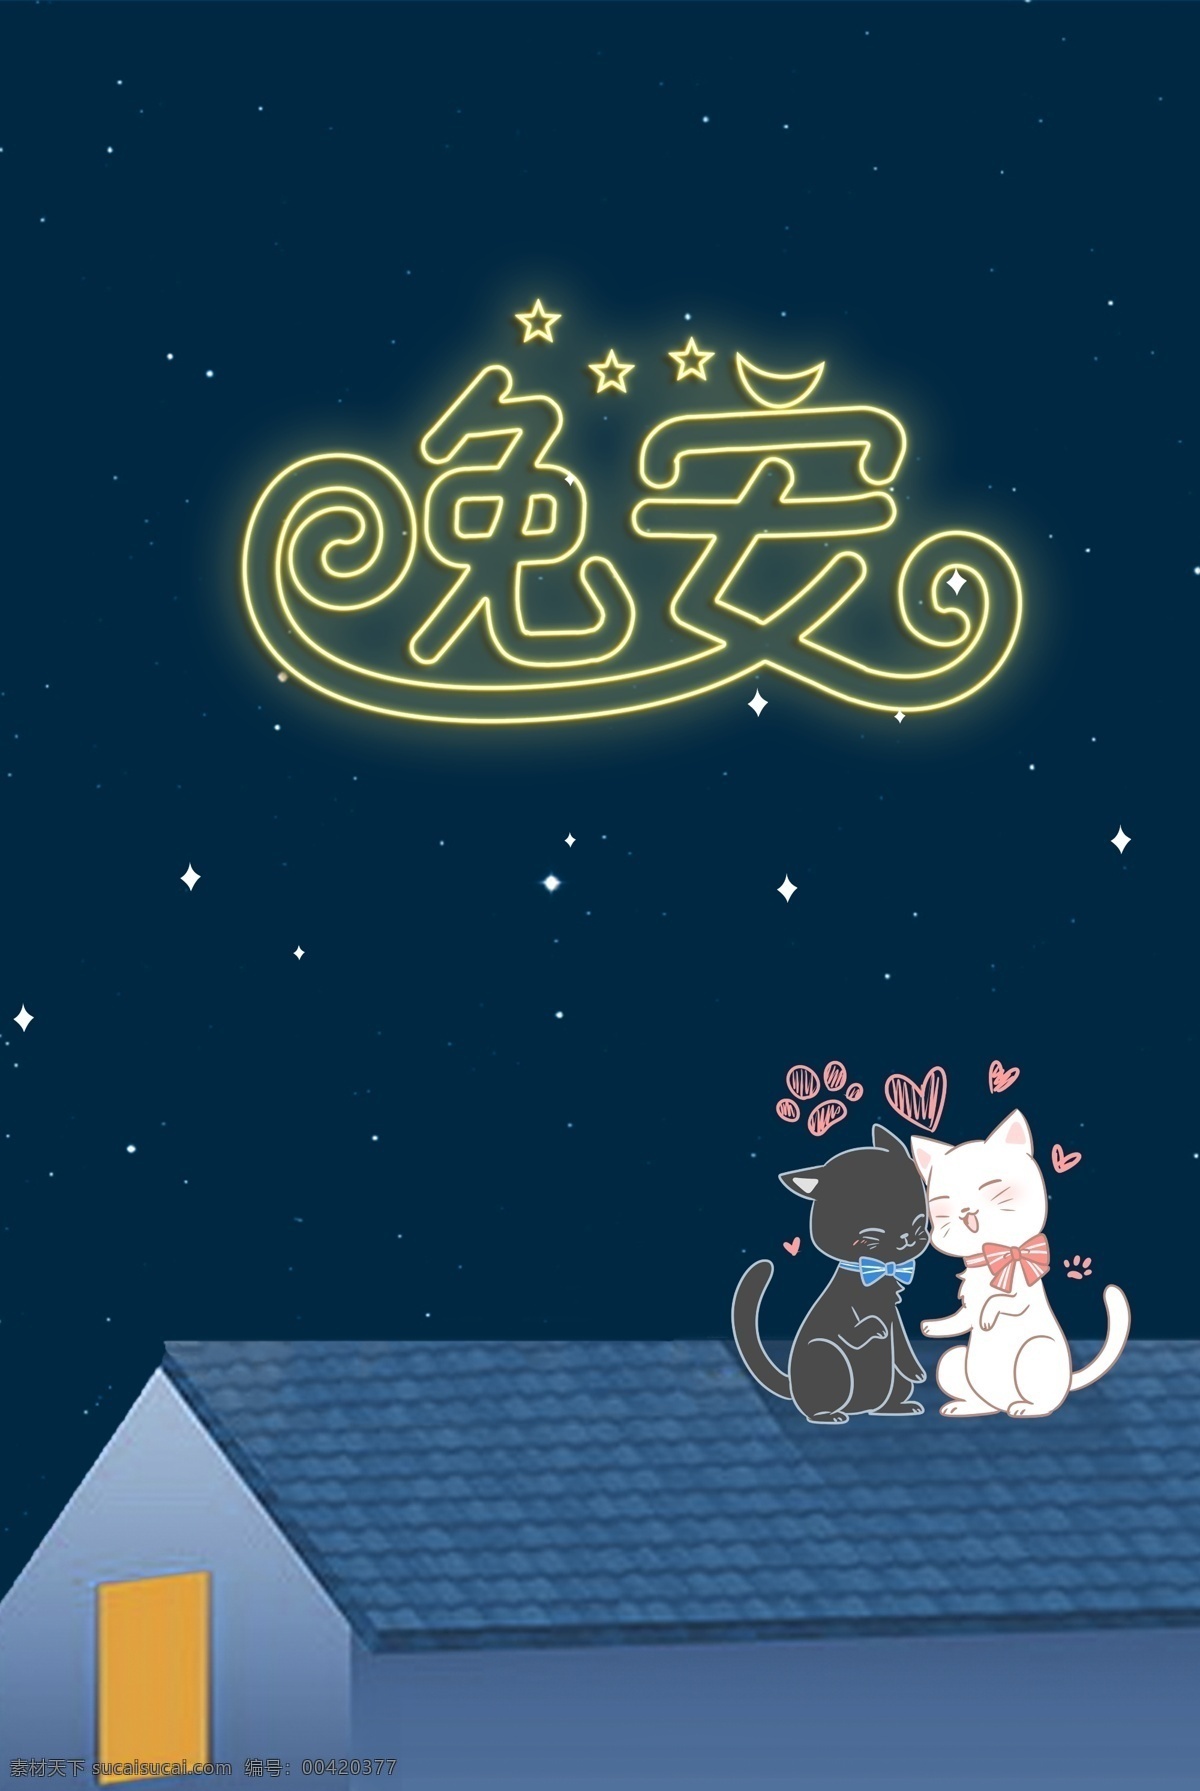 小 清新 简约 派 夜晚 屋顶 宠物 猫 看 星星 背景 图 小清新 手绘 晚安 房屋 猫咪 情侣 背景图 海报